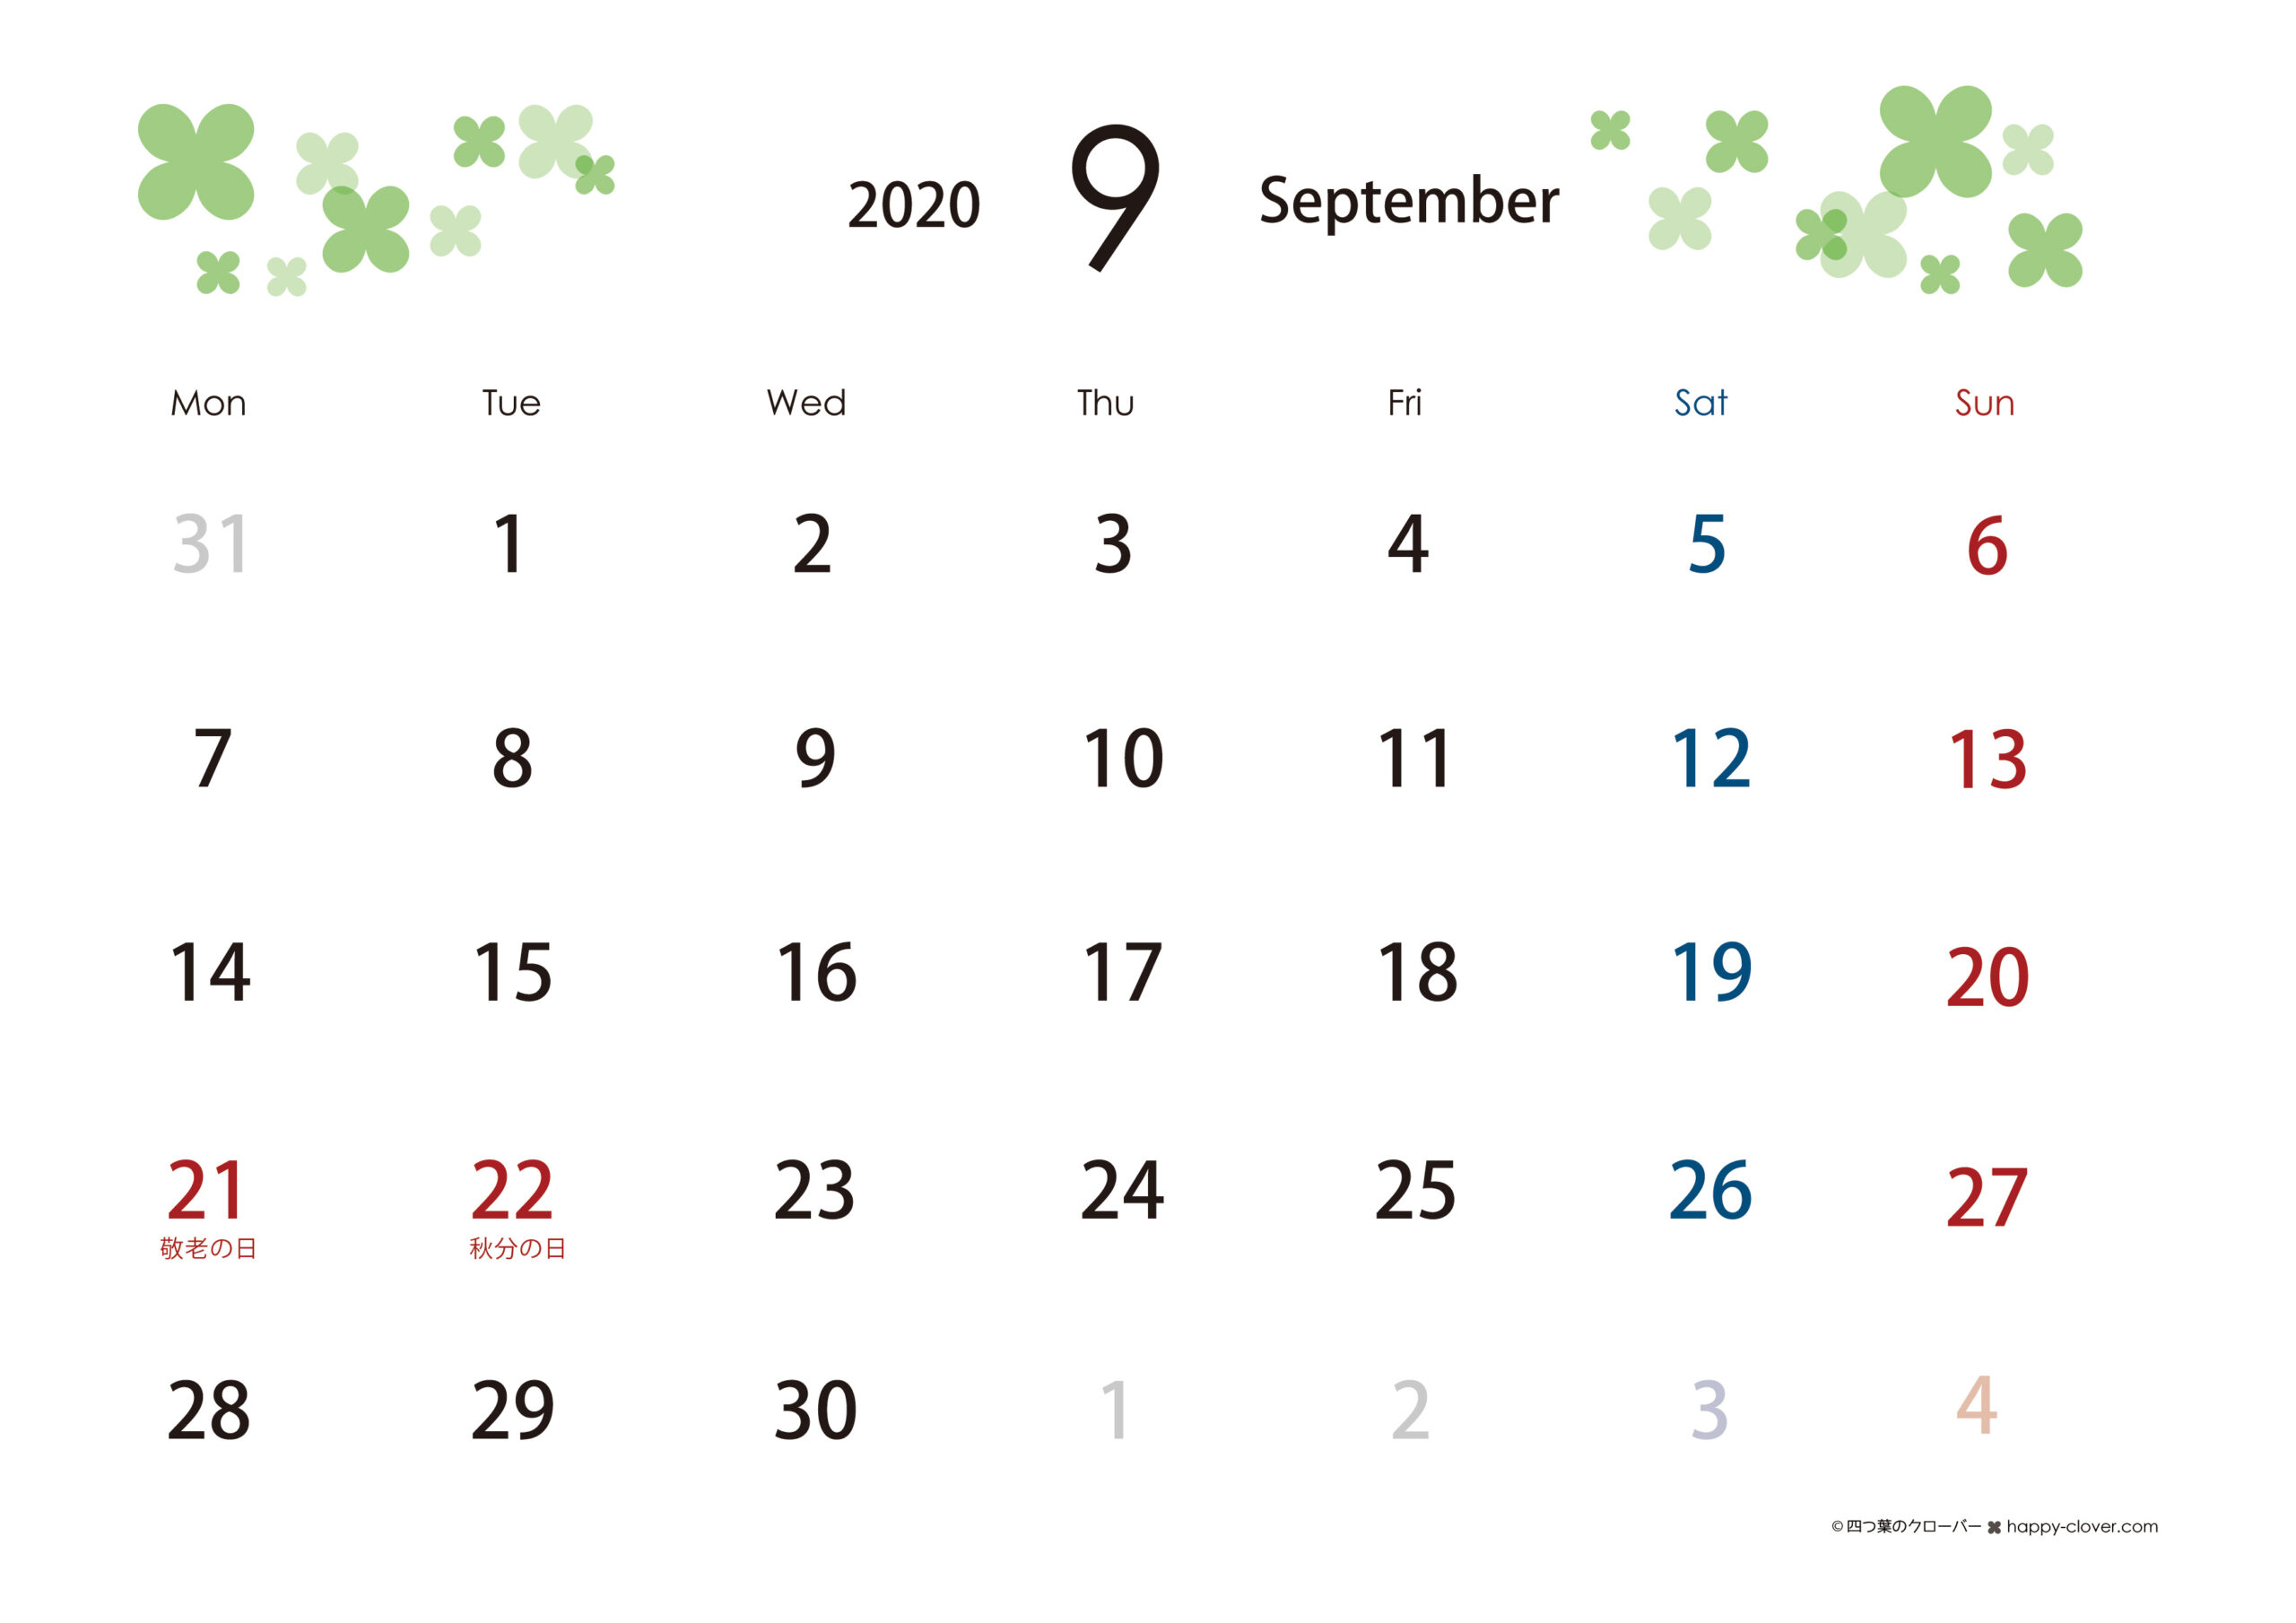 年9月 四つ葉のクローバーカレンダー 横型 月曜始まり Happy Clover イラスト テンプレート素材の無料ダウンロード